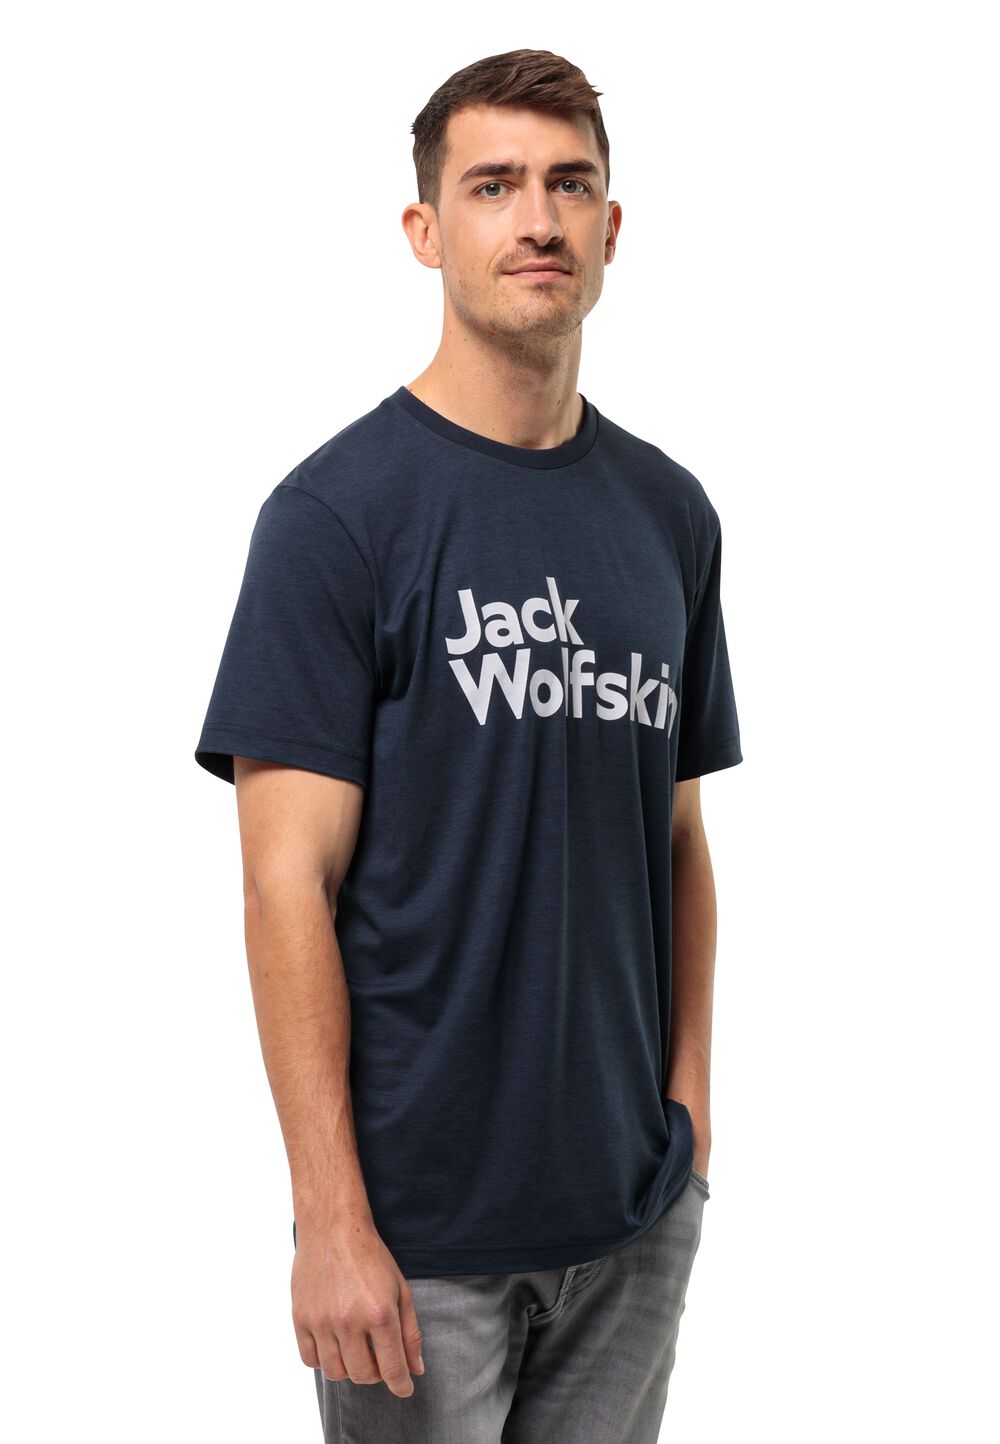 Jack Wolfskin Funktionsshirt Herren Brand T-Shirt Men S blau night blue von Jack Wolfskin